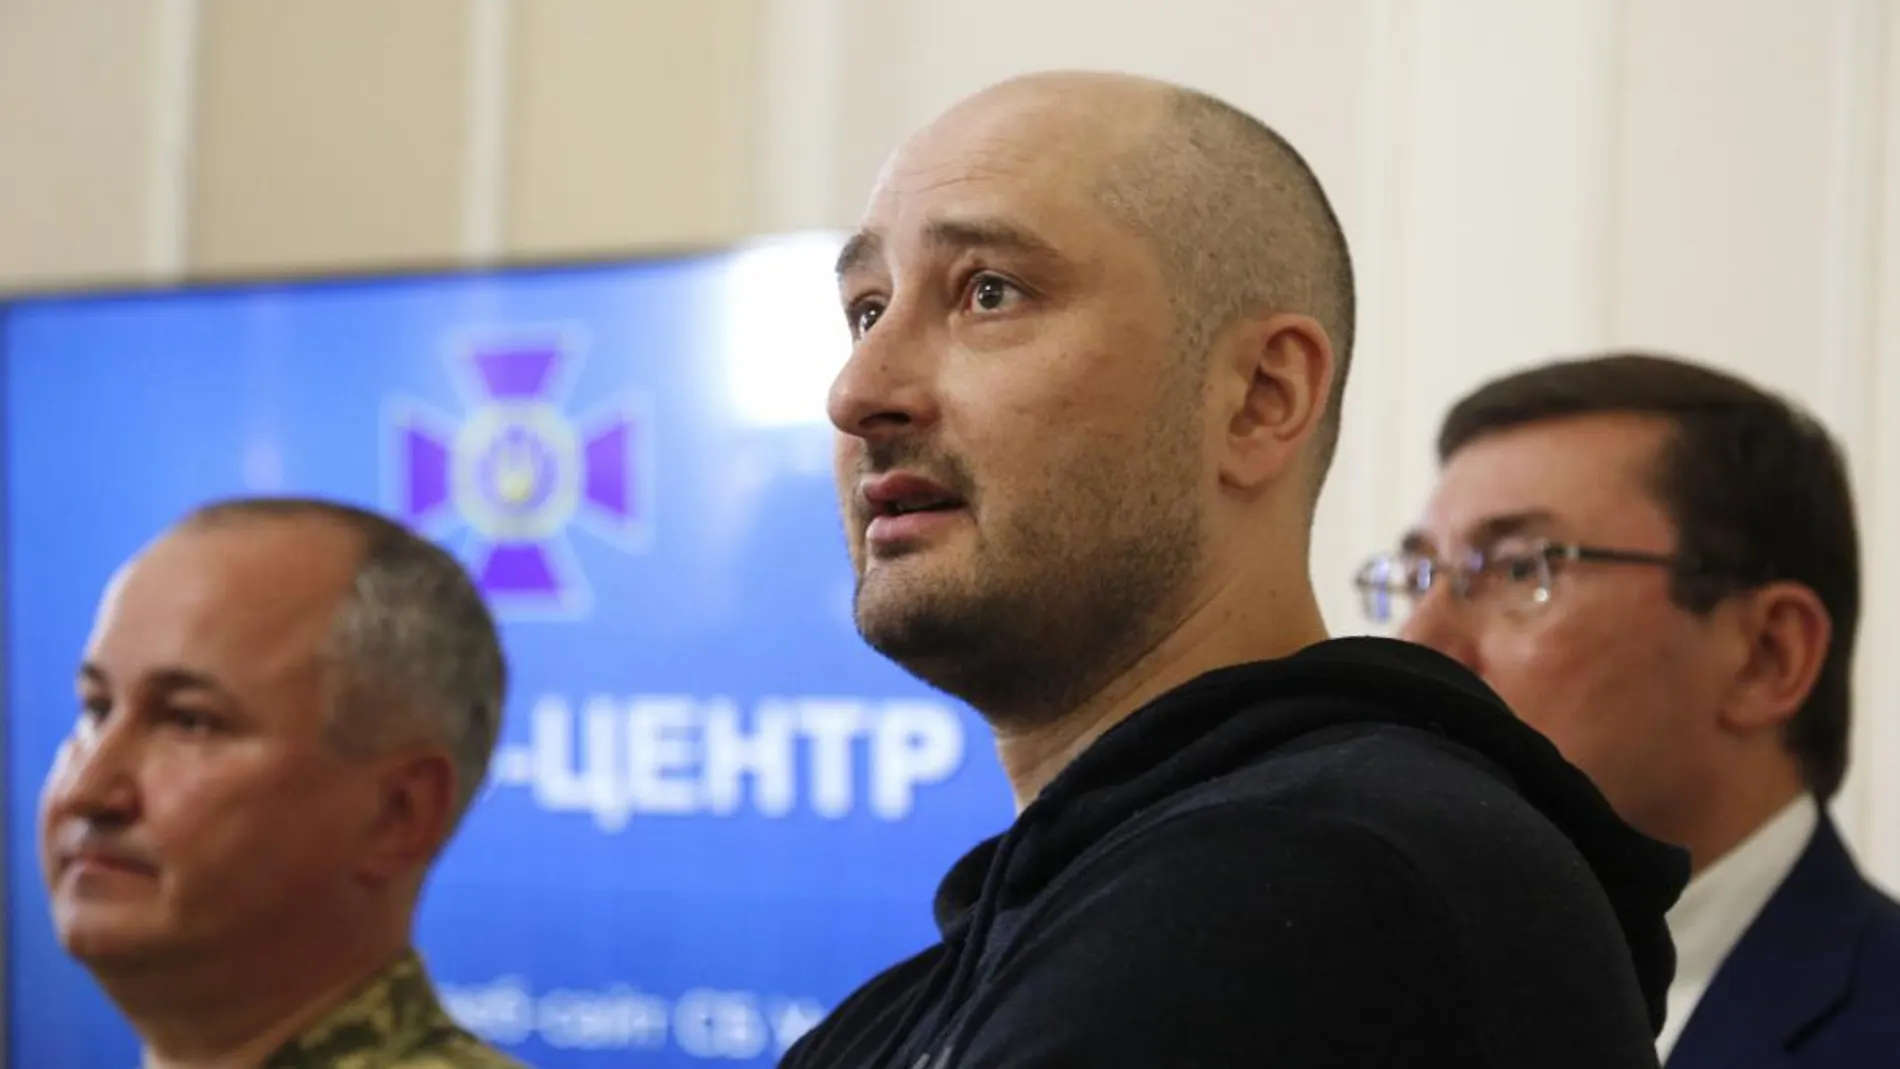 El periodista opositor, Arkady Babchenko, comparece en rueda de prensa / Foto: Ap